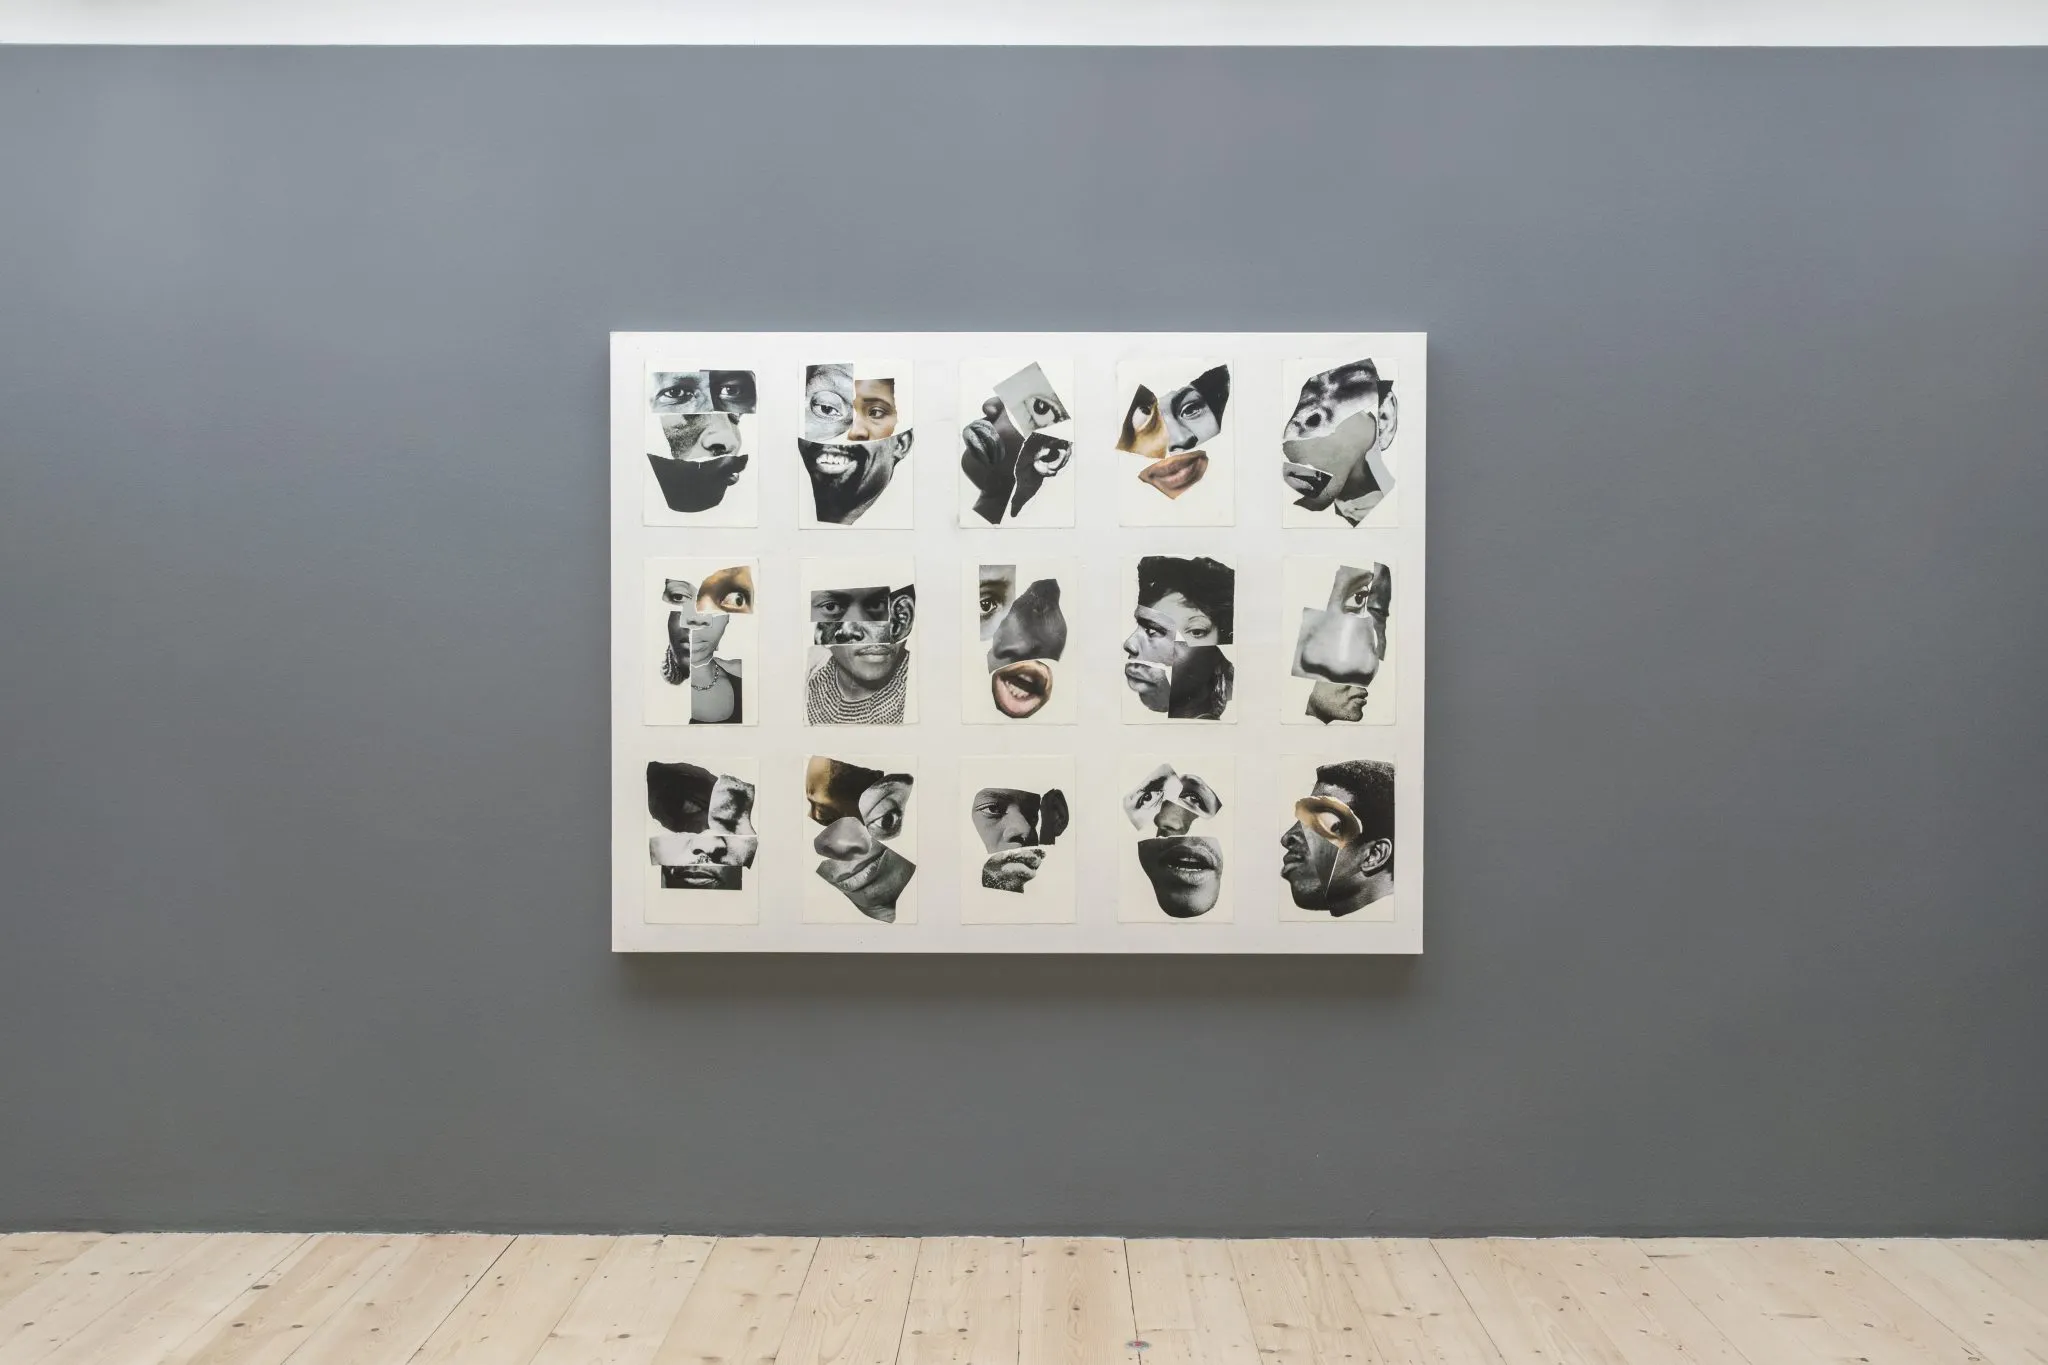 Collages van gezichten met verschillende onderdelen (ogen, oren, mond enz.), die in totaal 15 zwart-wit portretten vormen, aangebracht op een doek.